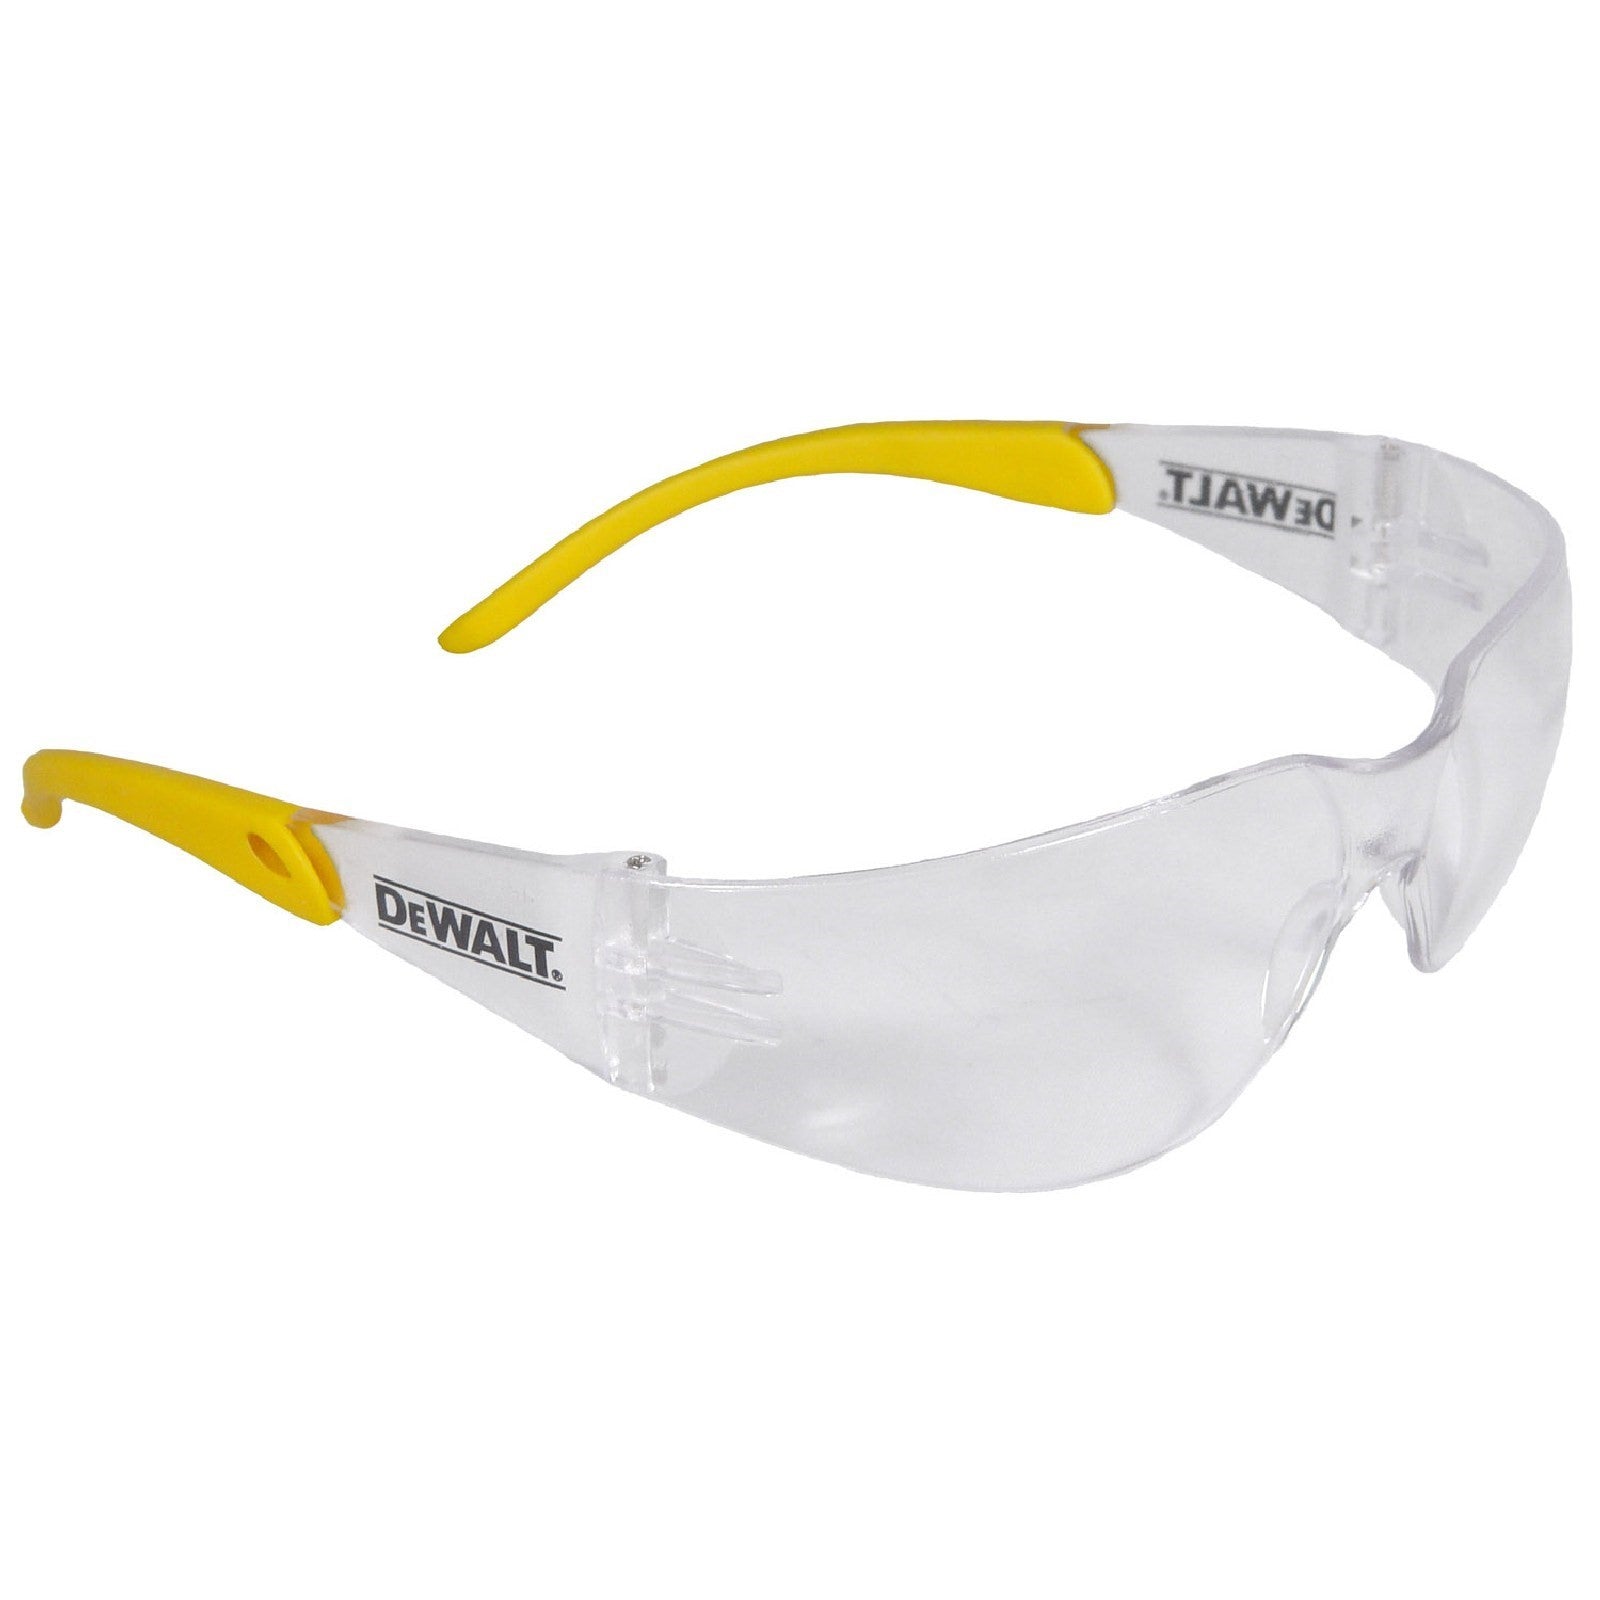 Dewalt Protector DPG54 Safety Eyewear